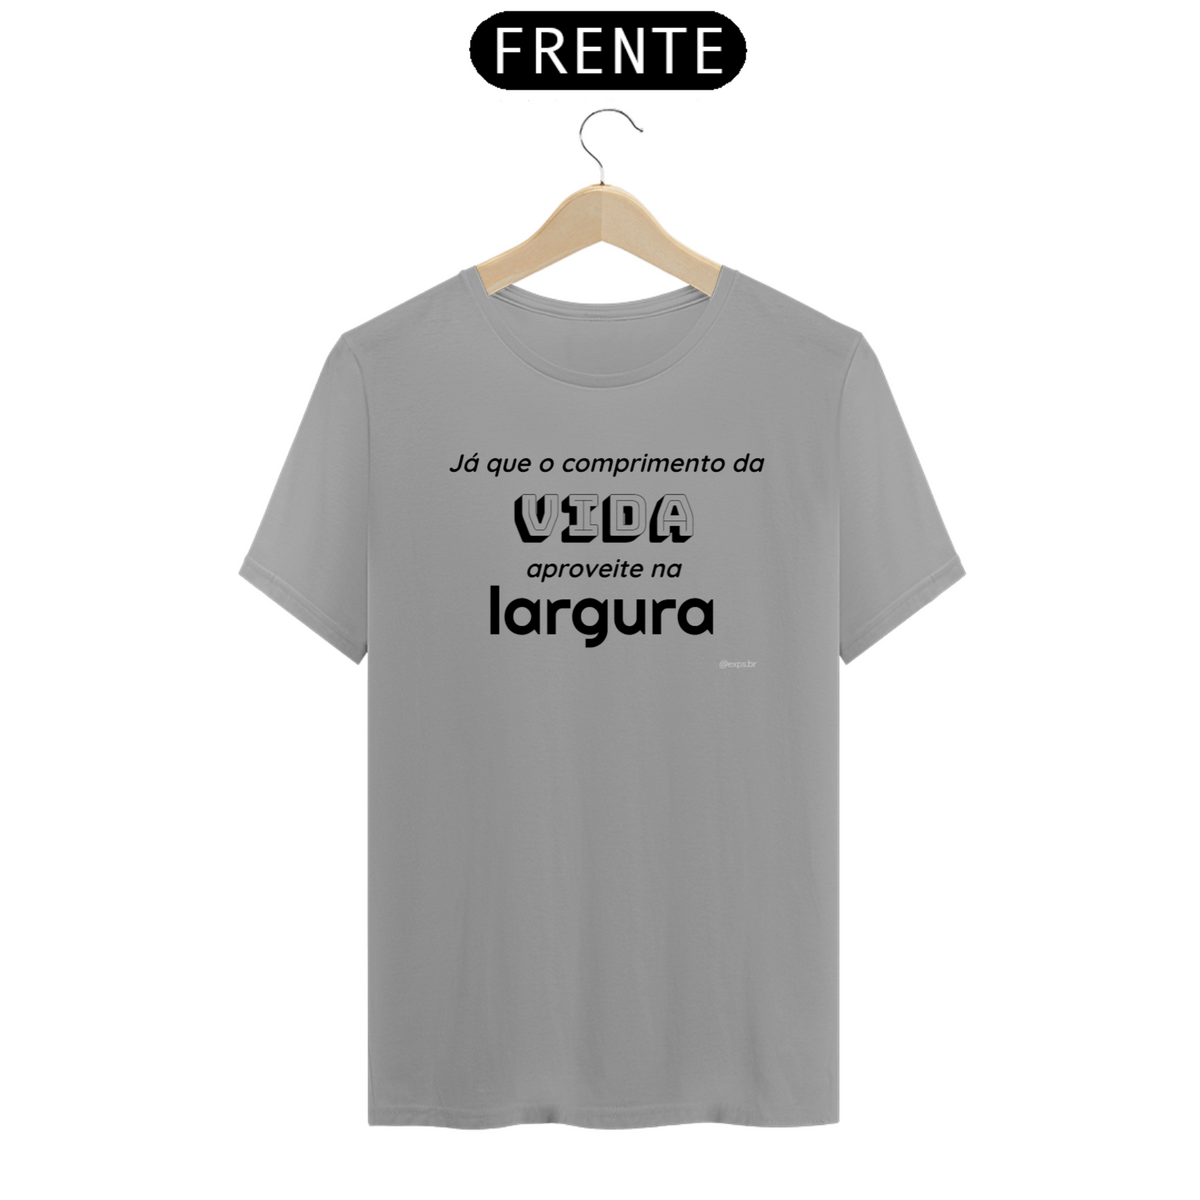 Nome do produto: Camiseta T-Shirt - Comprimento da Vida - cores claras - linha Quality (C0010-A.T)